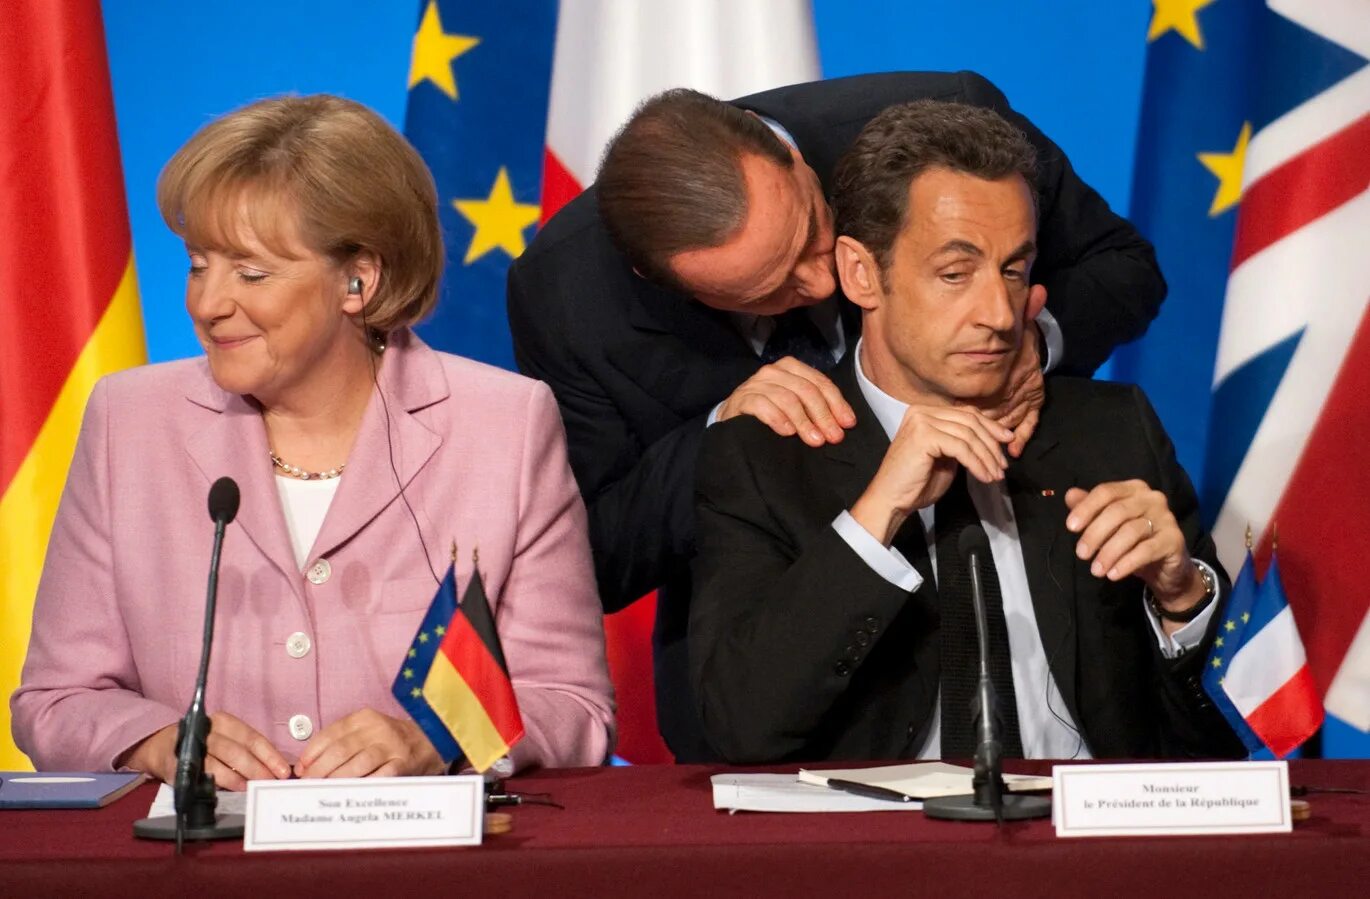 Европейские политики. Политика фото. Политический фоторепортаж. Поцелуи политиков. Результаты европейской политики